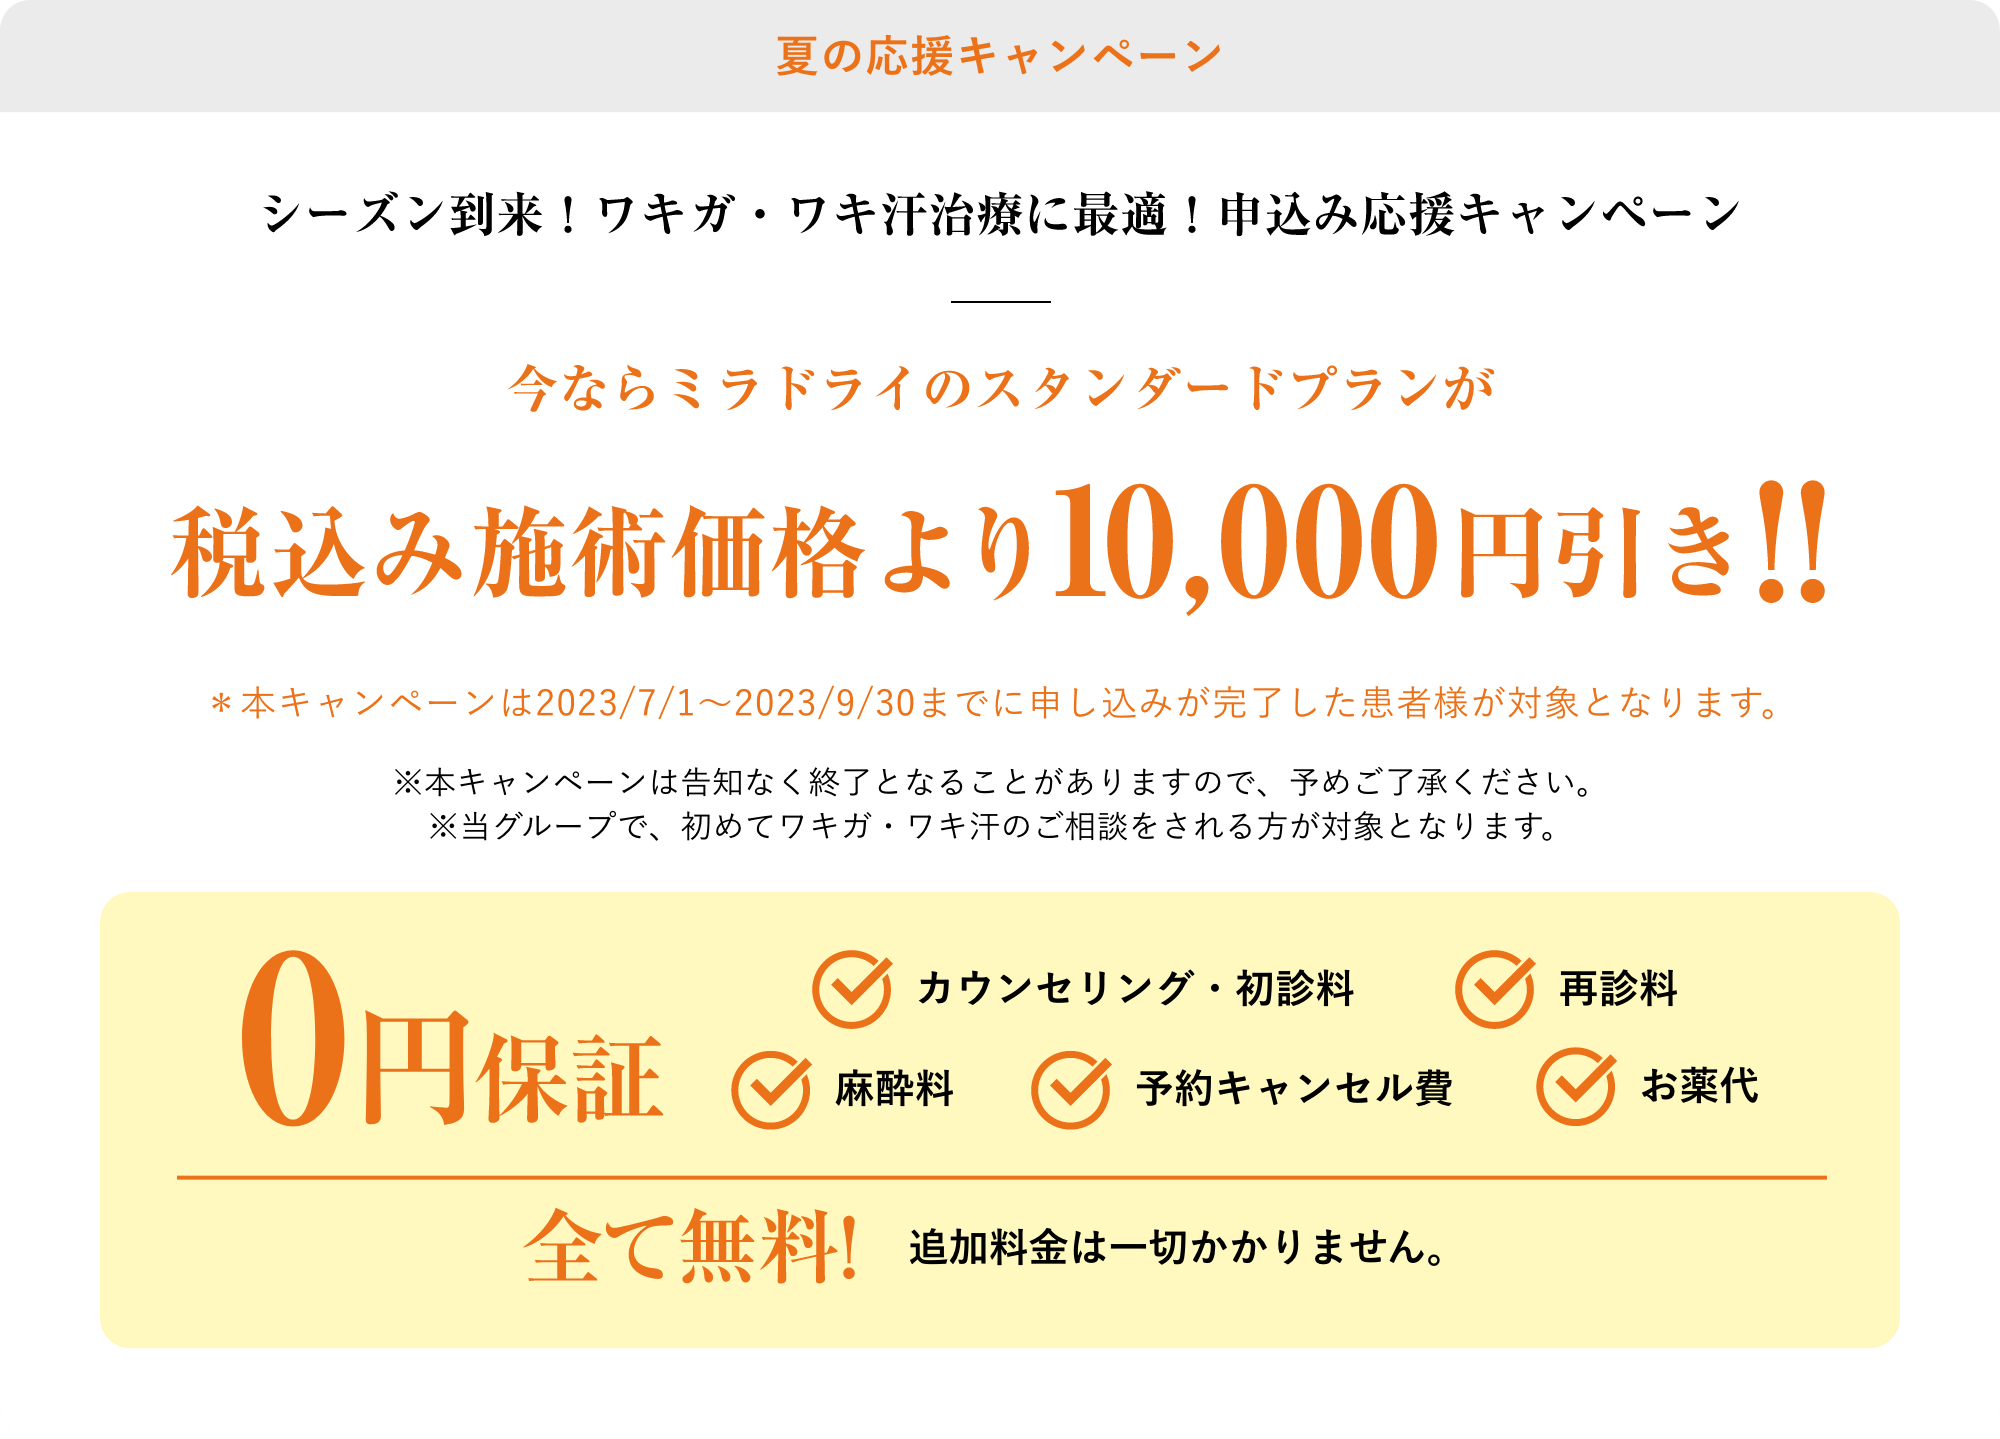 夏の応援キャンペーン税込み施術価格より10,000円引き！！